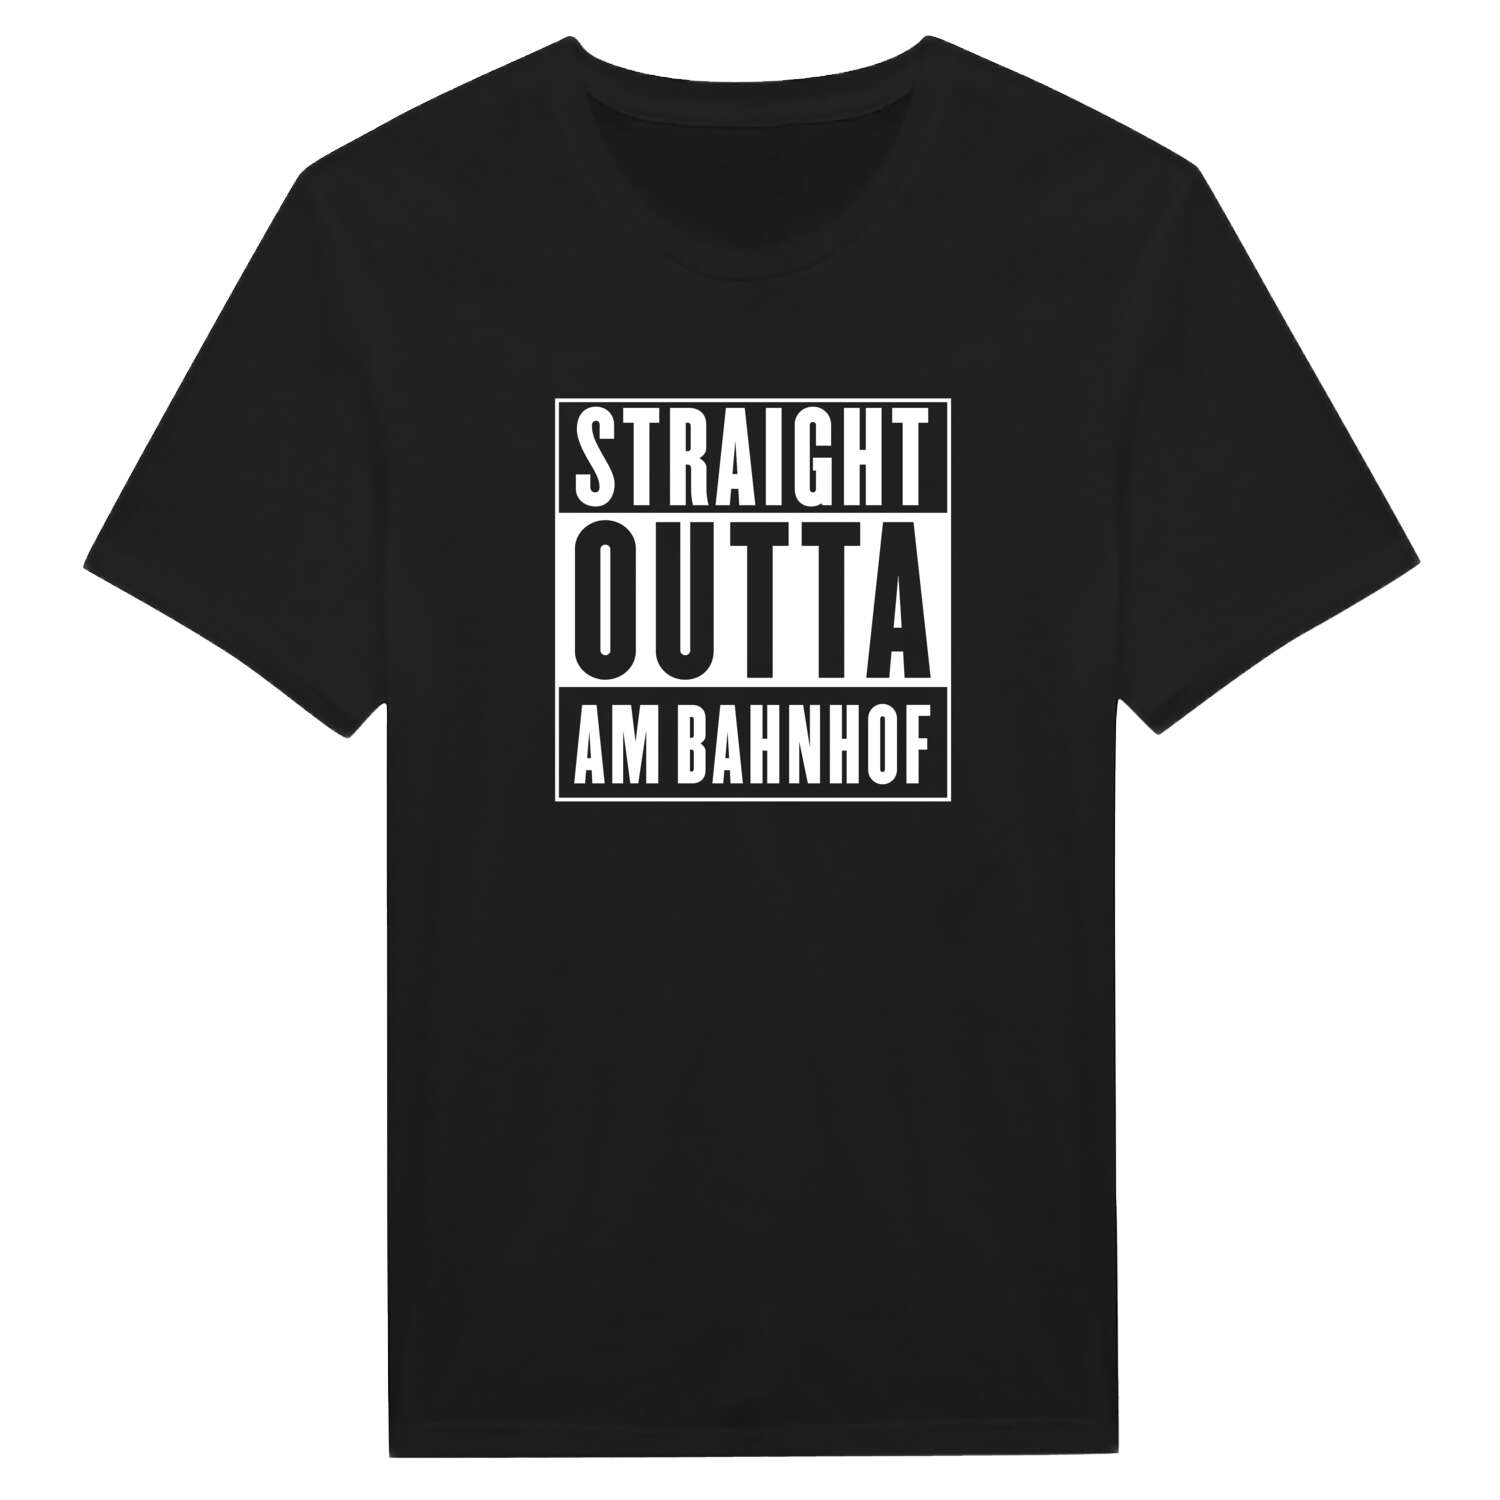 Am Bahnhof T-Shirt »Straight Outta«